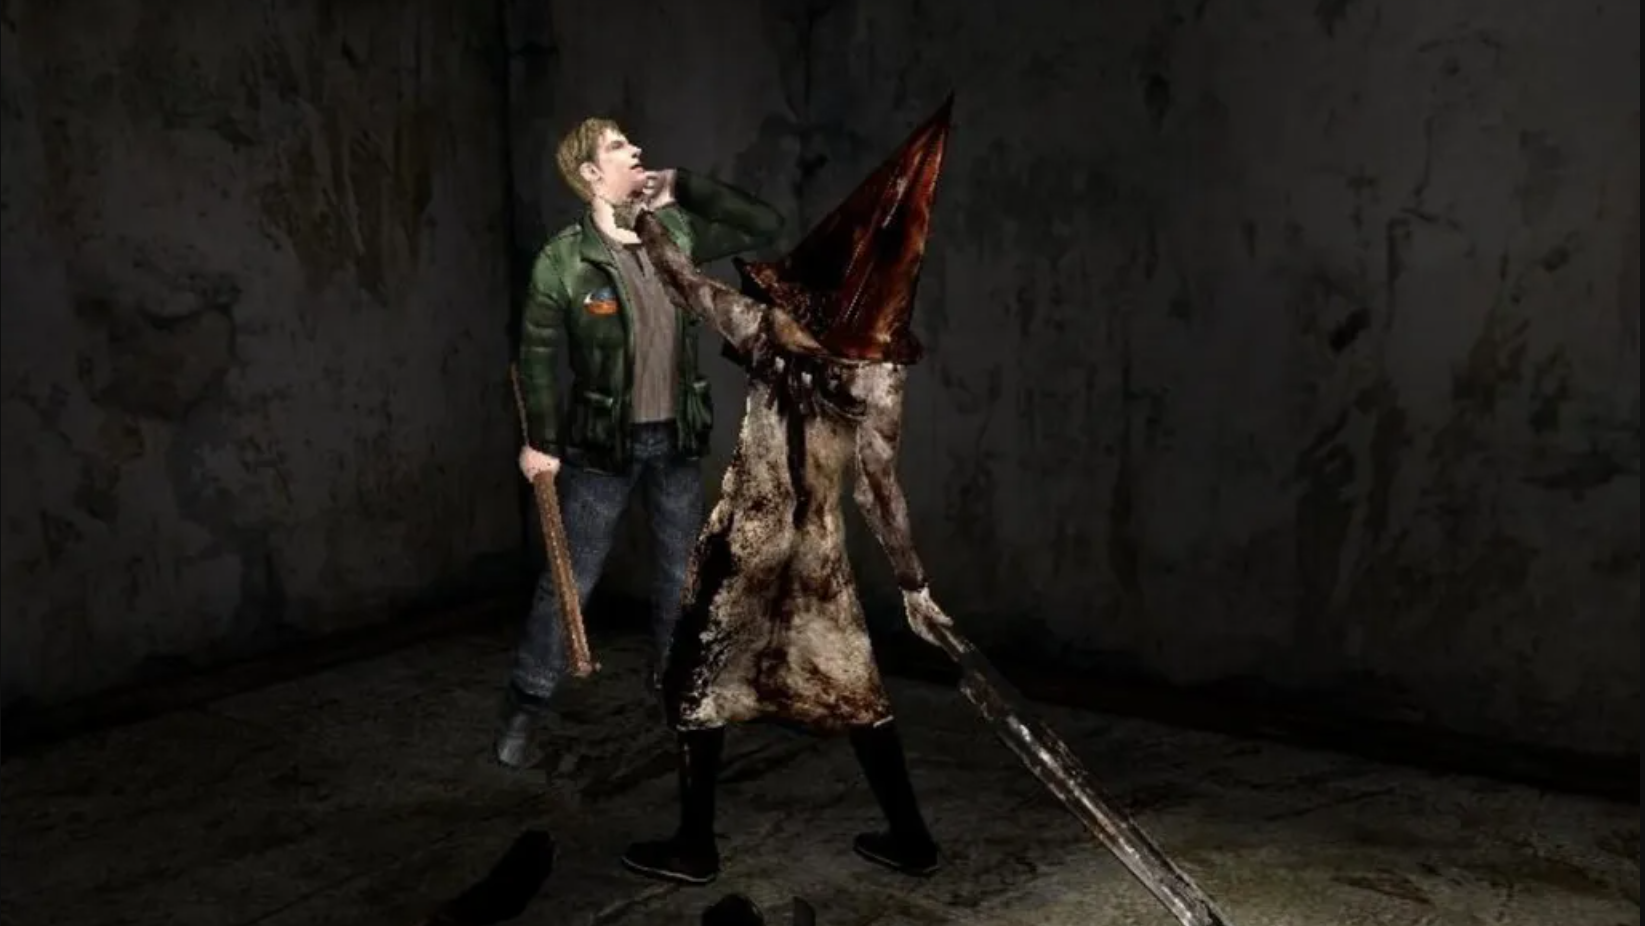 Será verdade? Possíveis imagens do Remake de Silent Hill 2 aparecem nas redes sociais